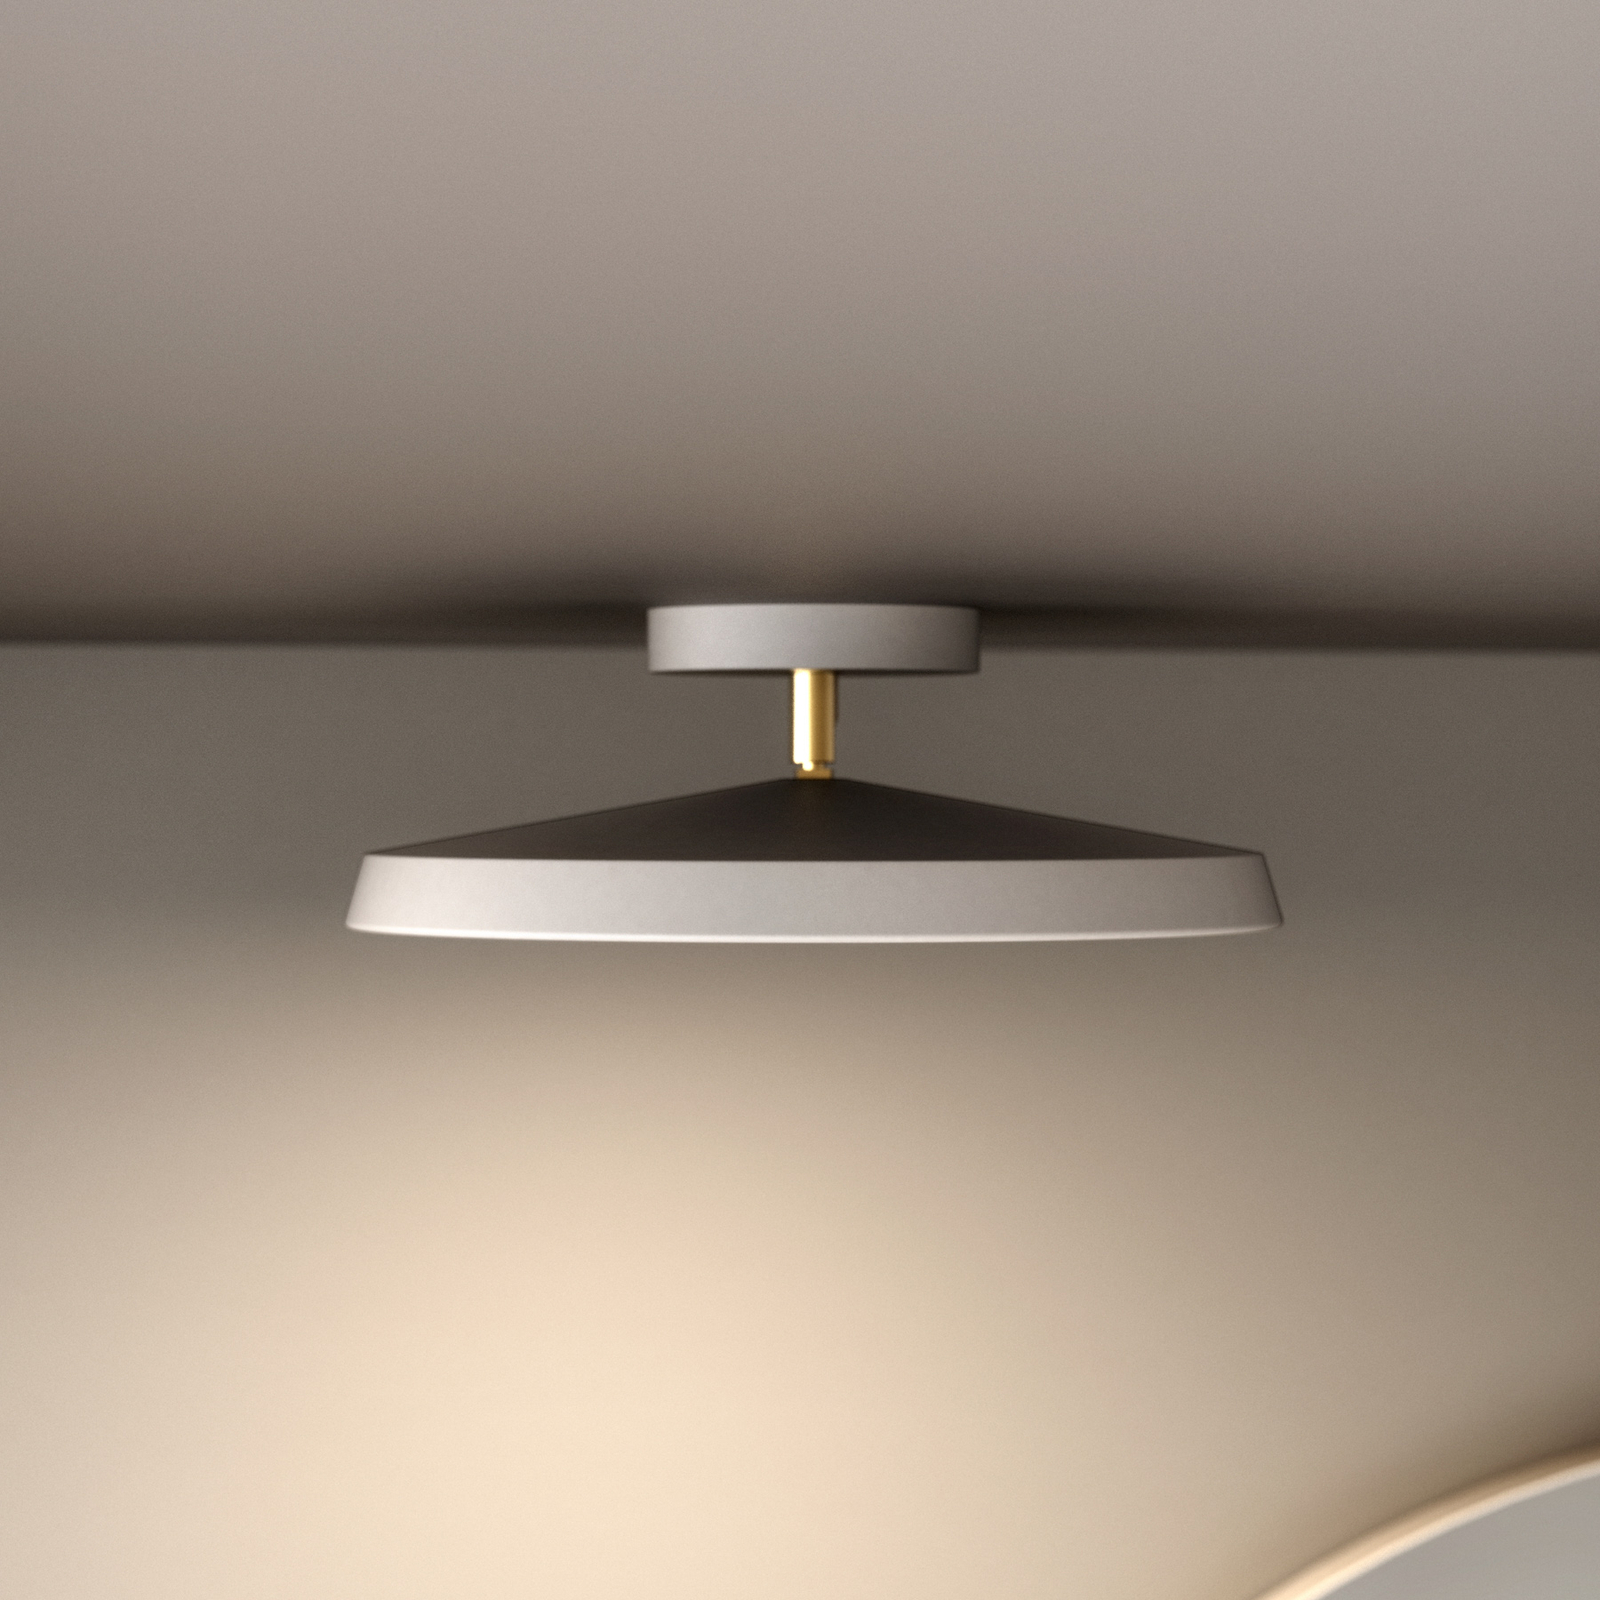 Kaito Pro LED plafondlamp, wit, Ø 30 cm